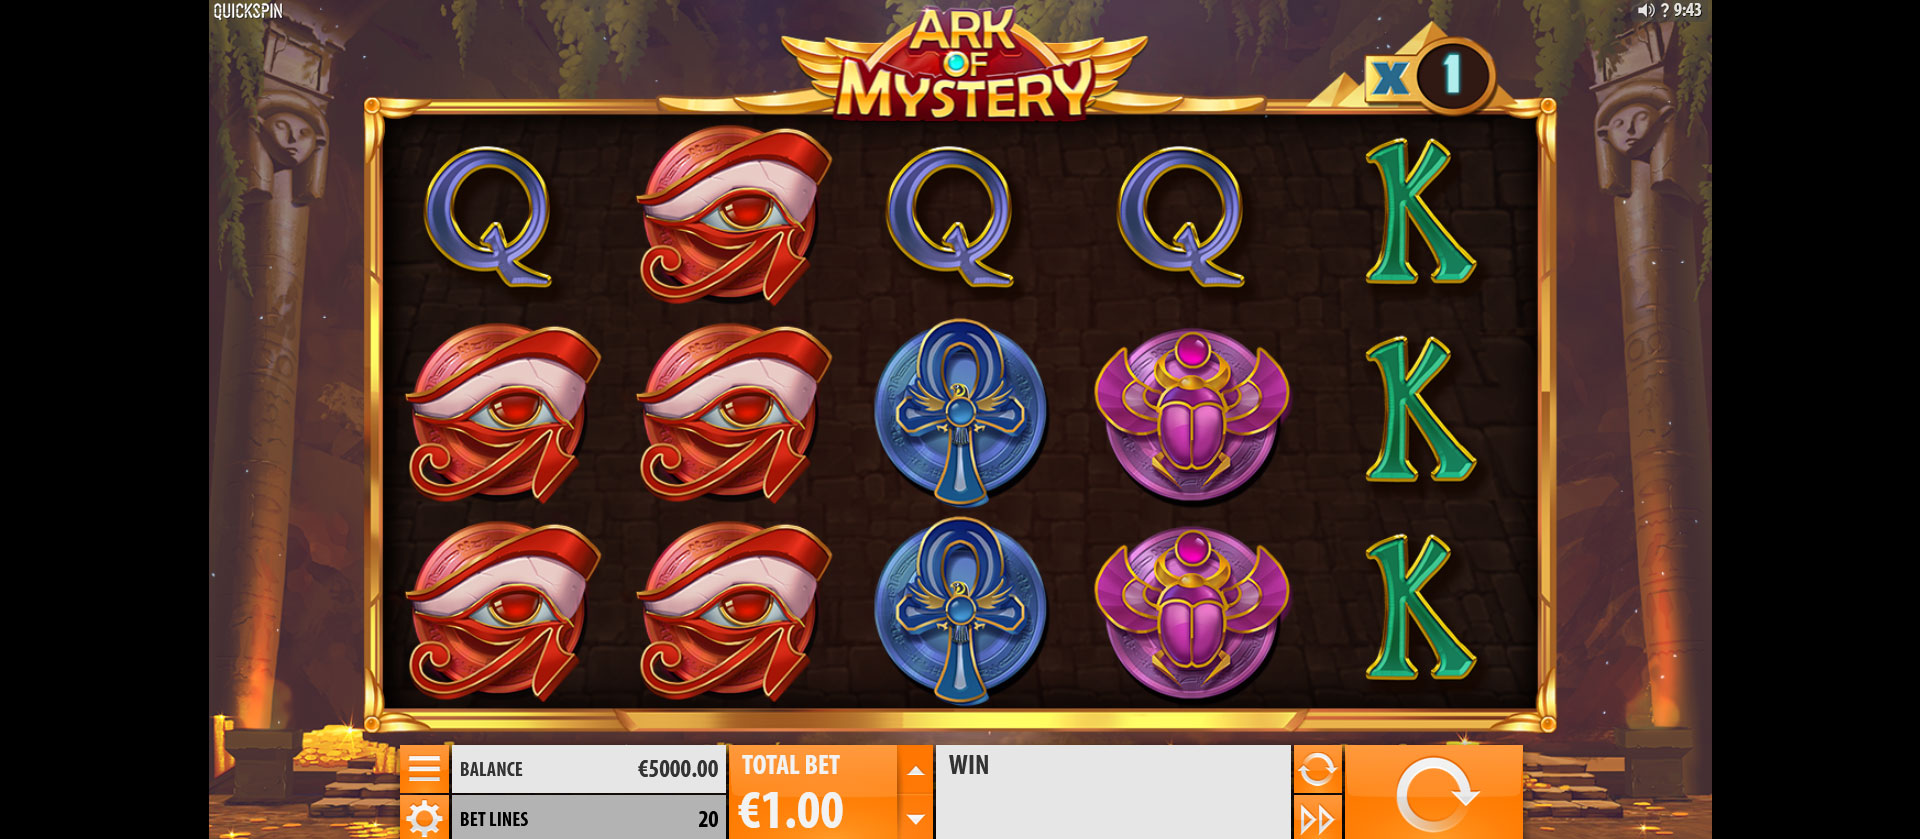 griglia del gioco slot machine ark of mystery